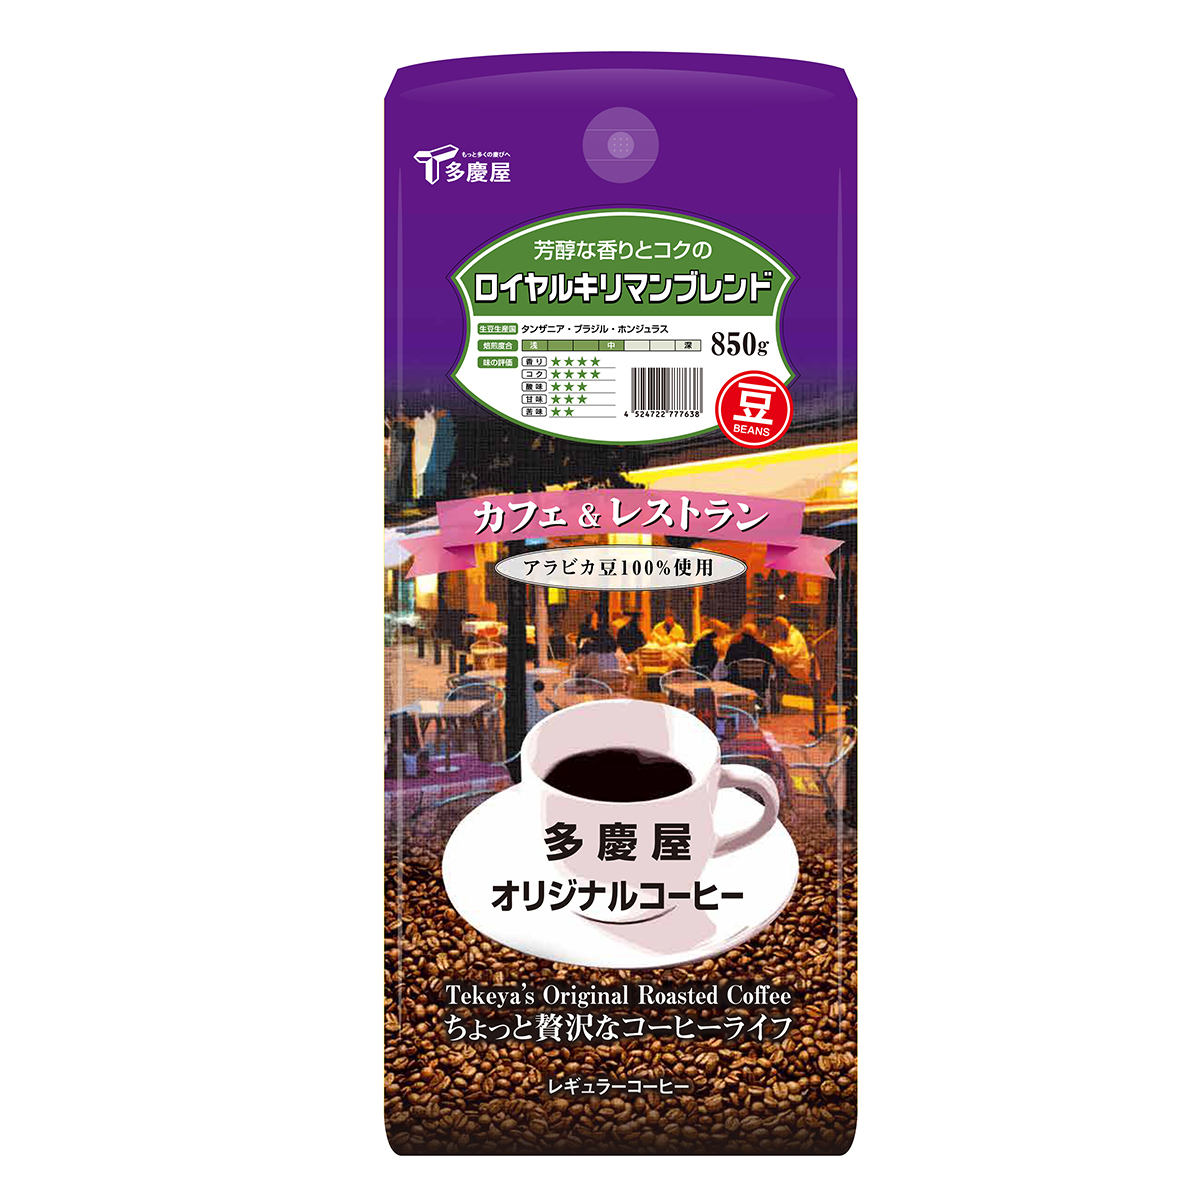 カフェ＆レストランロイヤルキリマンブレンド豆850gレギュラーコーヒーオリジナルコーヒー豆